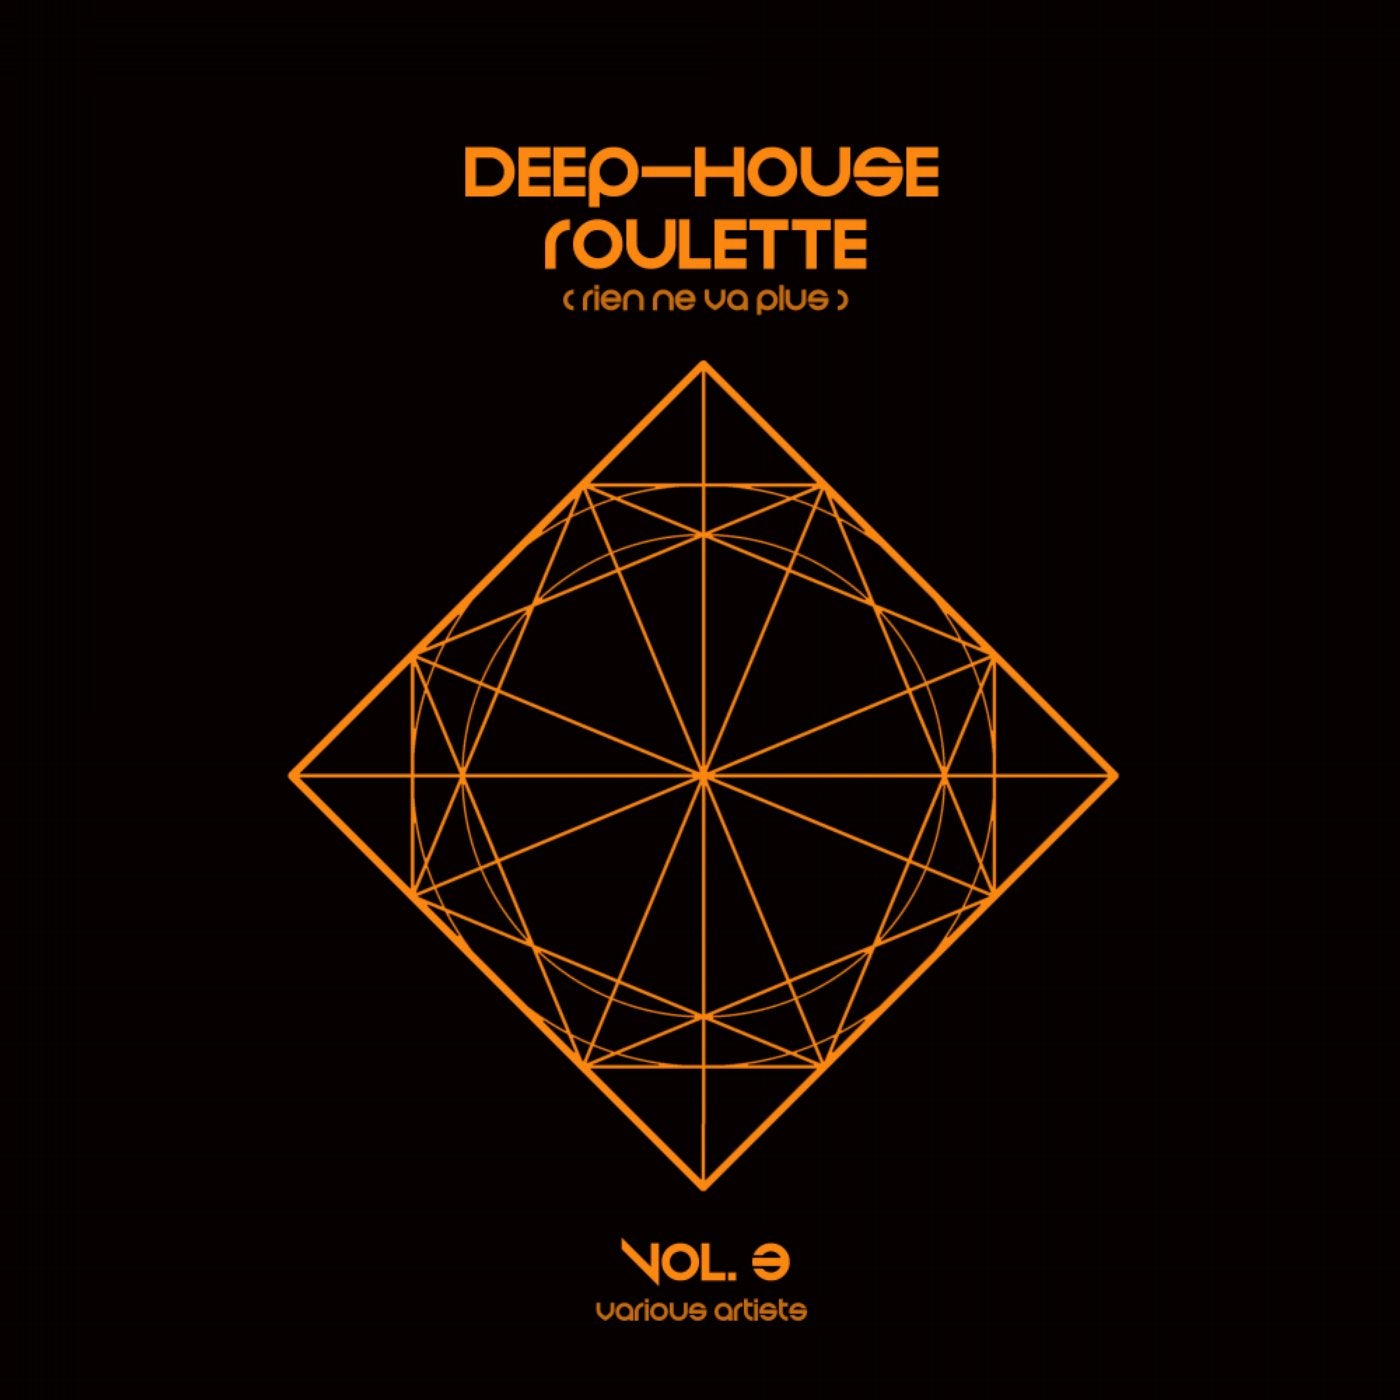 Deep-House Roulette (Rien ne va plus), Vol. 3